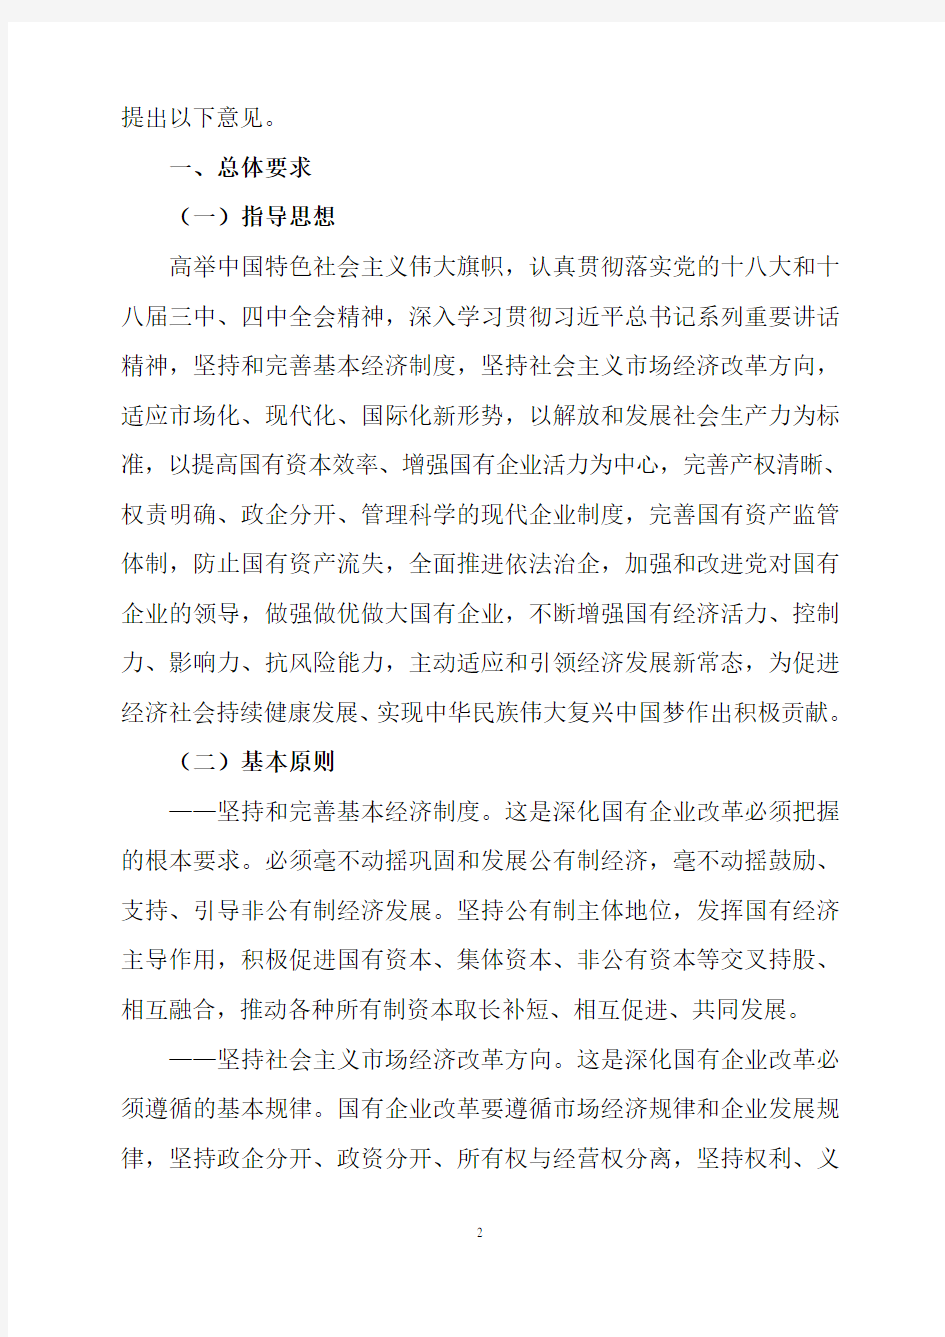 中共中央、国务院关于深化国有企业改革的指导意见(全文)